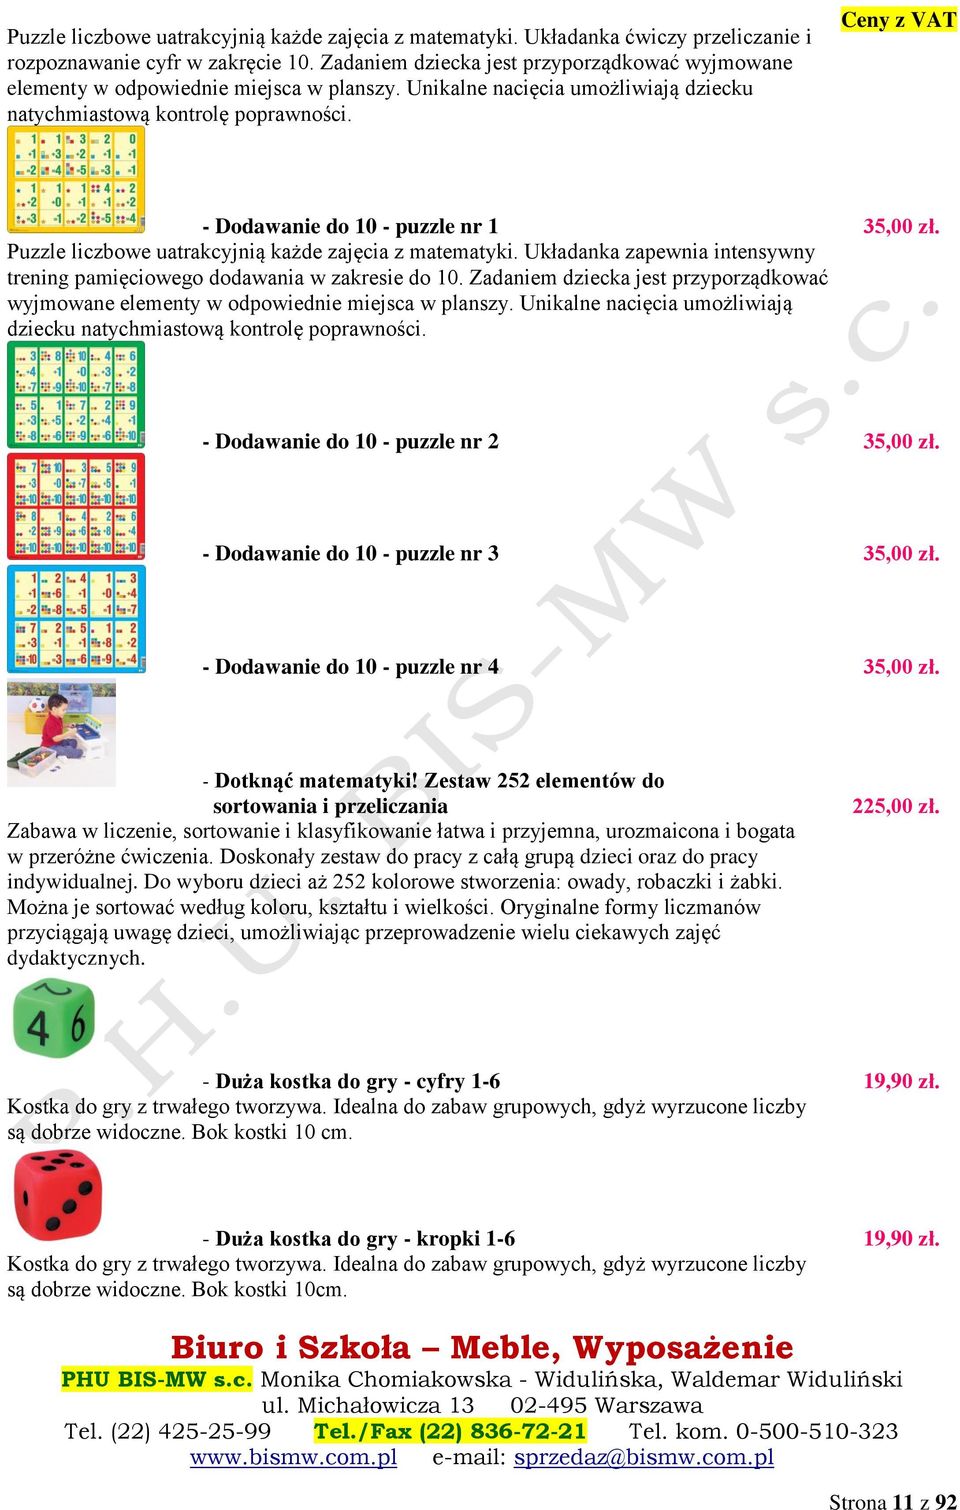 Ceny z VAT - Dodawanie do 10 - puzzle nr 1 35,00 zł. Puzzle liczbowe uatrakcyjnią każde zajęcia z matematyki. Układanka zapewnia intensywny trening pamięciowego dodawania w zakresie do 10.